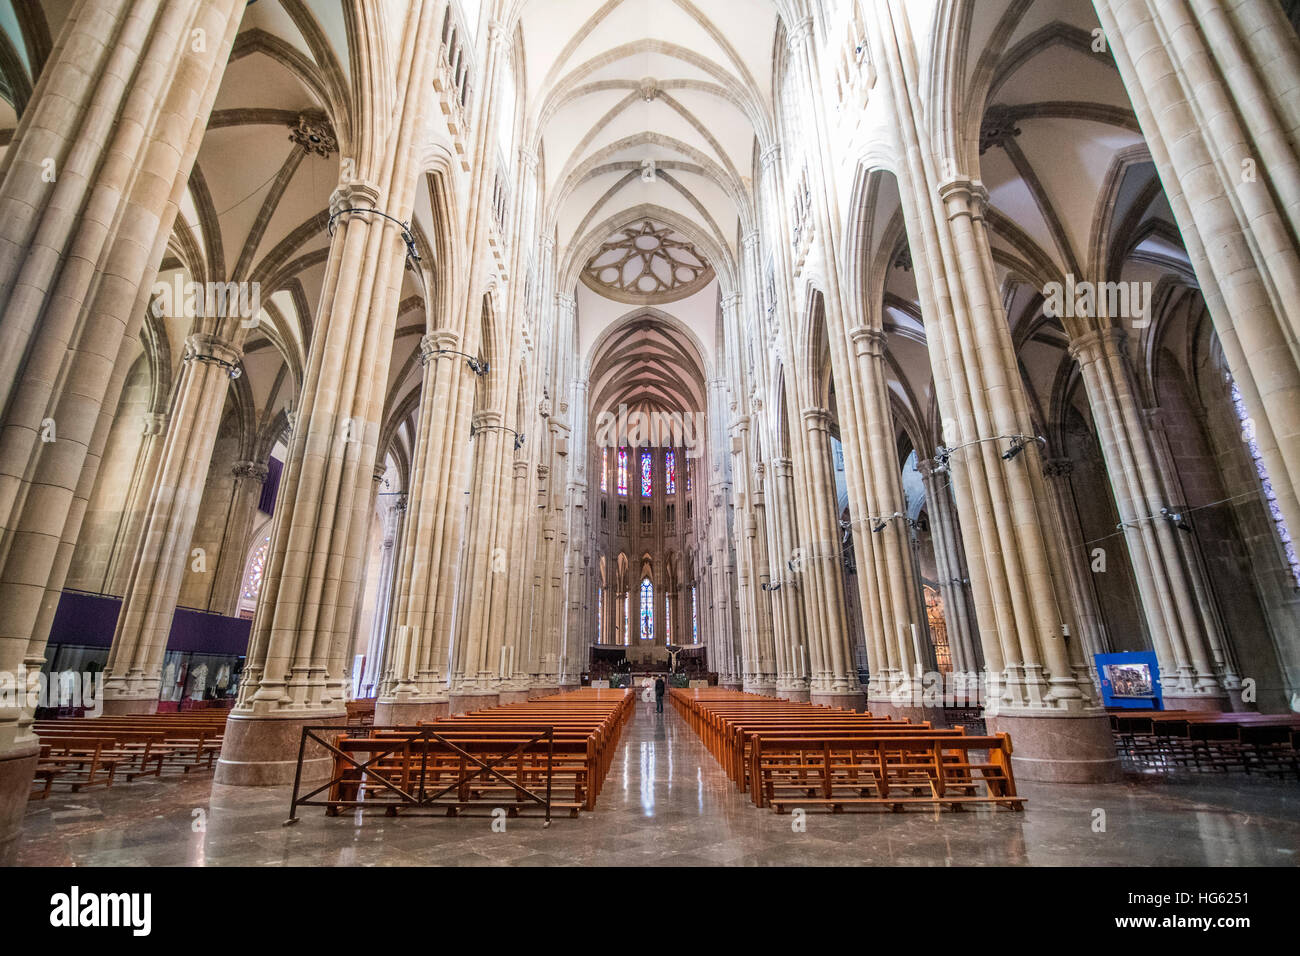 Interno della cattedrale di Maria Immacolata a Vitoria, Spagna, costruito nel XX secolo con alto stile gotico. Foto Stock